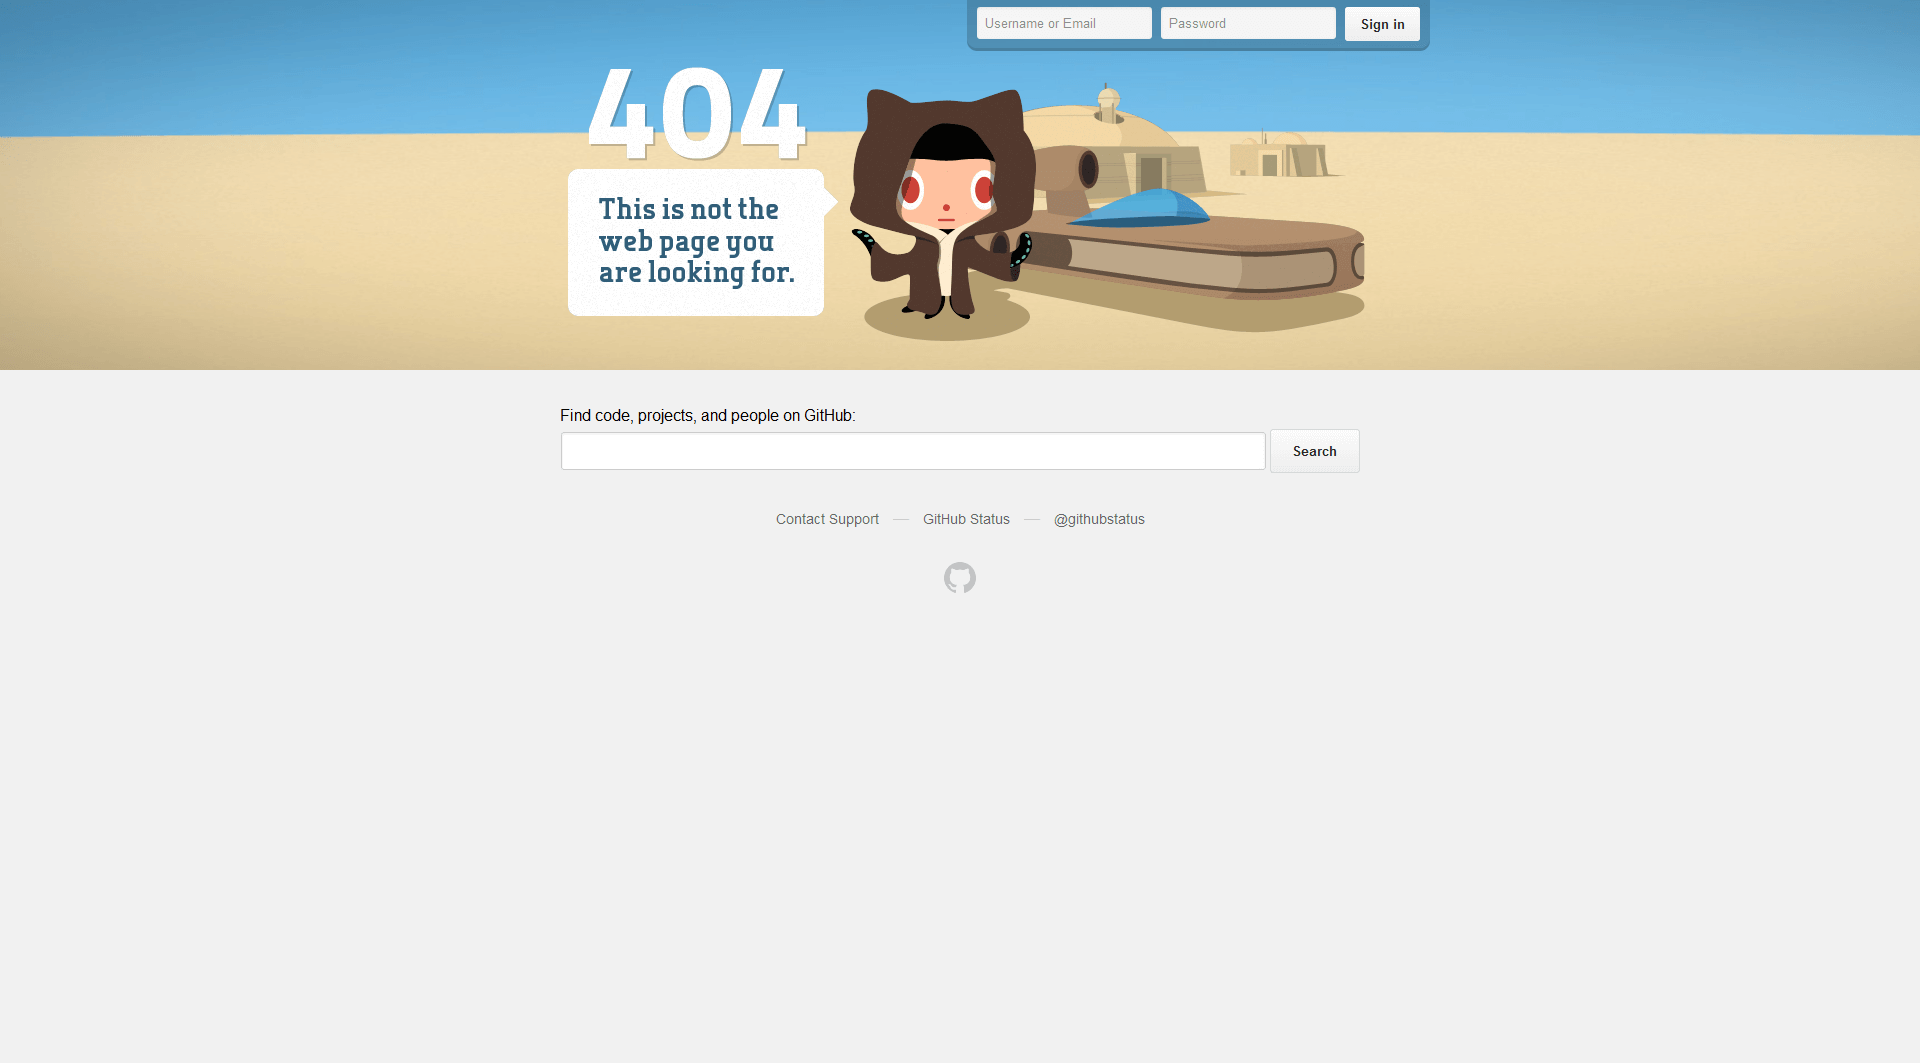 GitHub’s 404 page